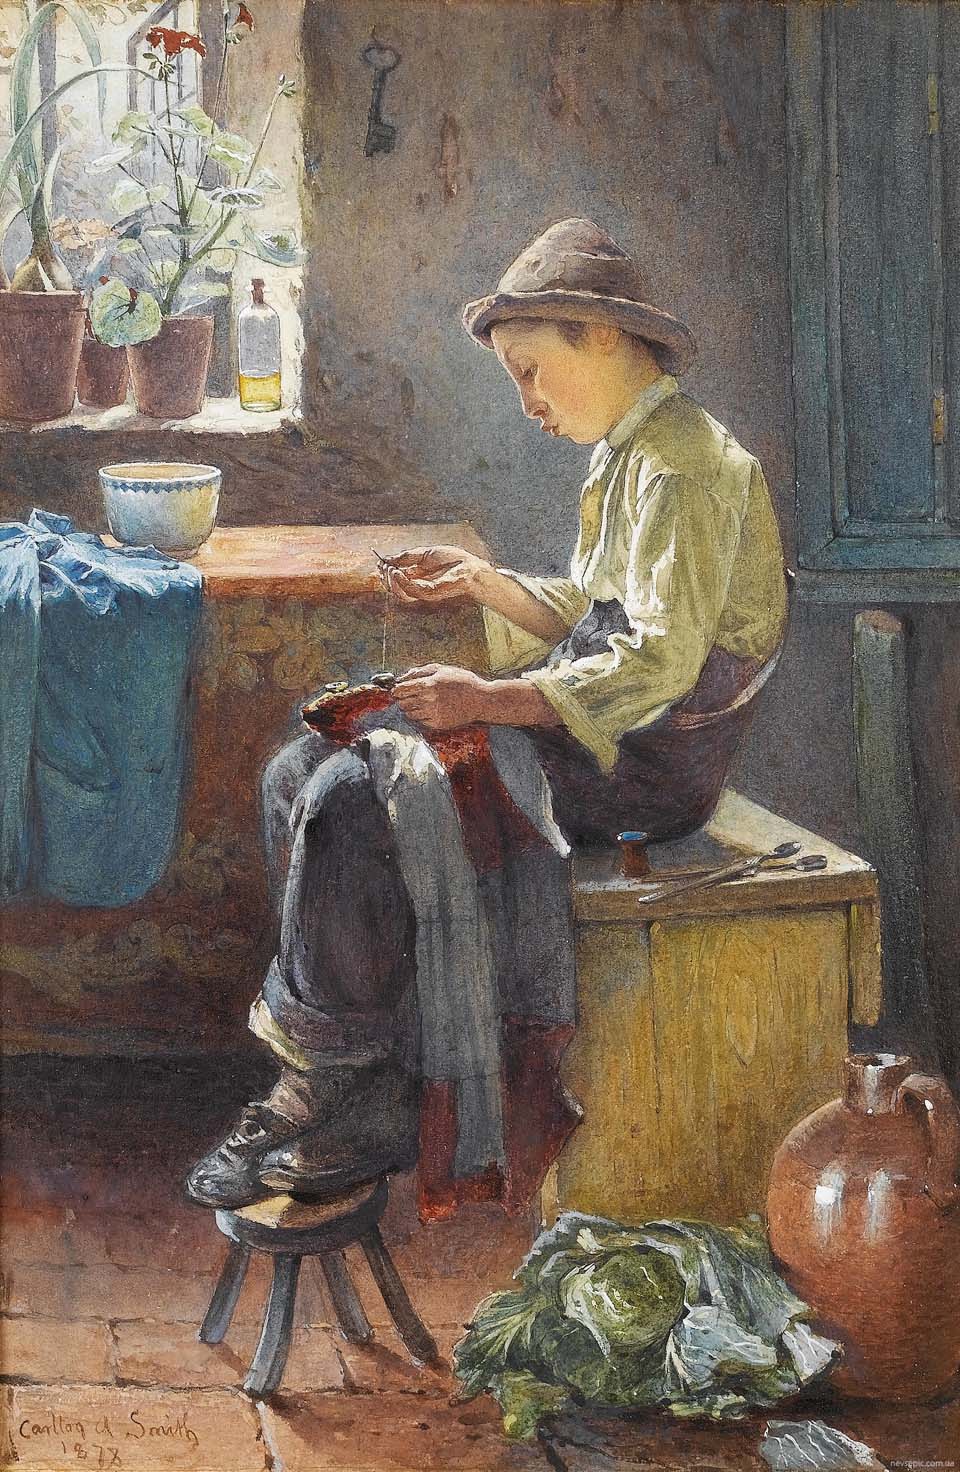 A young boy mending a shirt